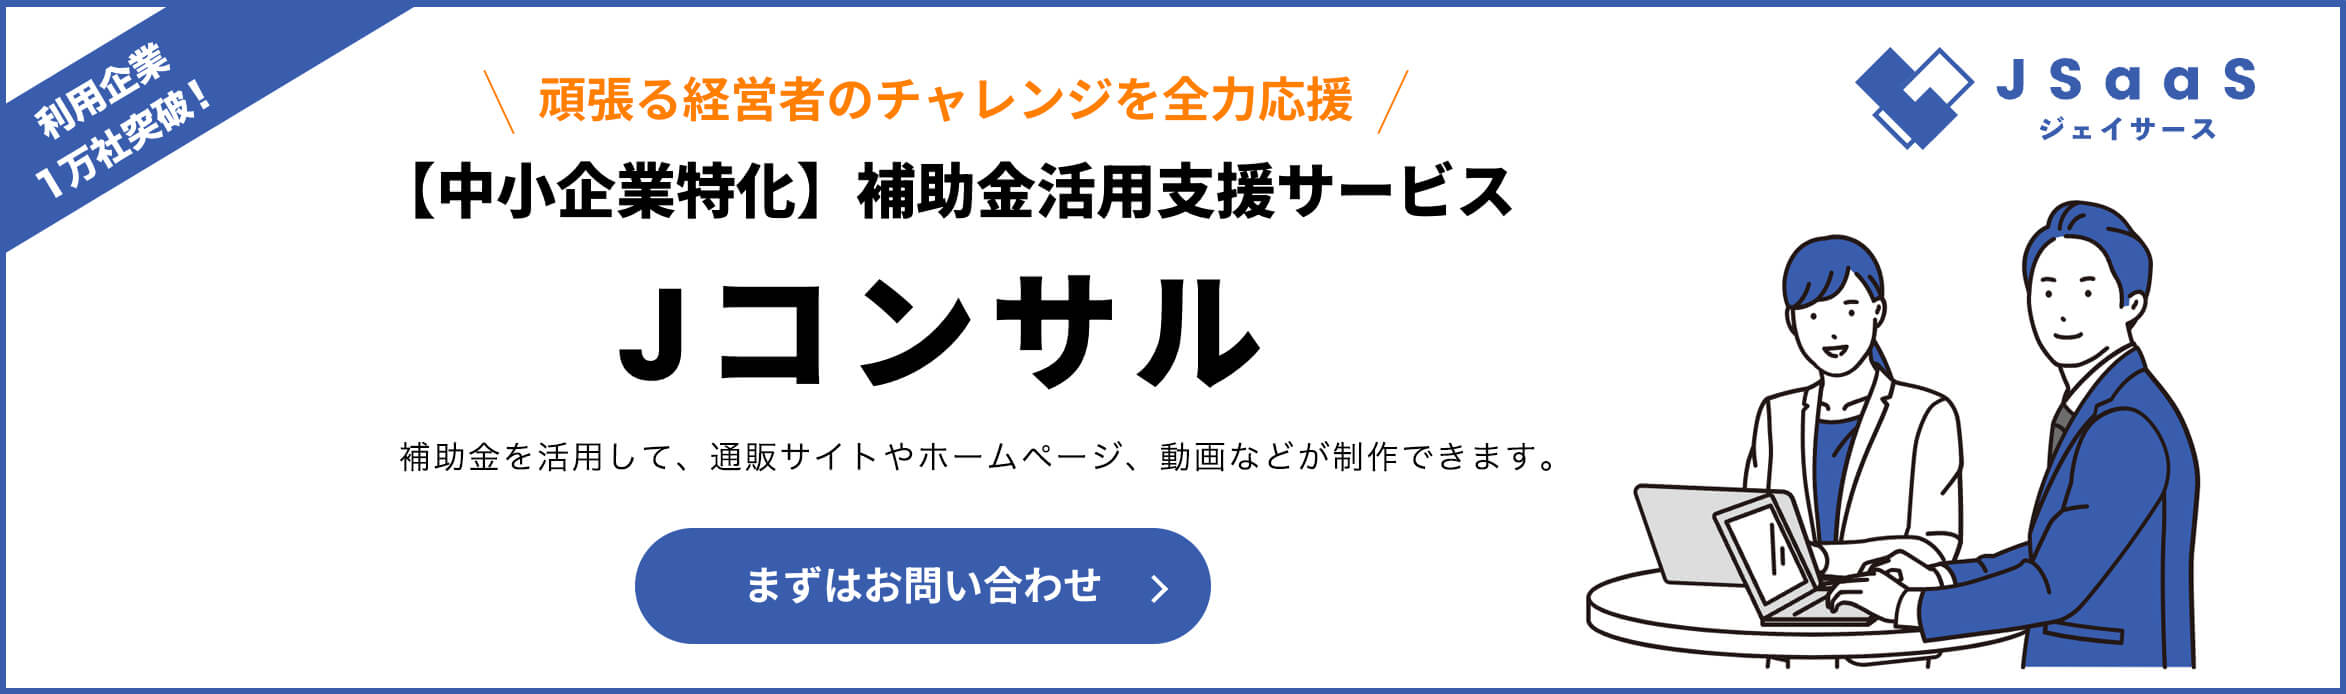 静岡県,補助金,ホームページ,通販サイト,ECサイト